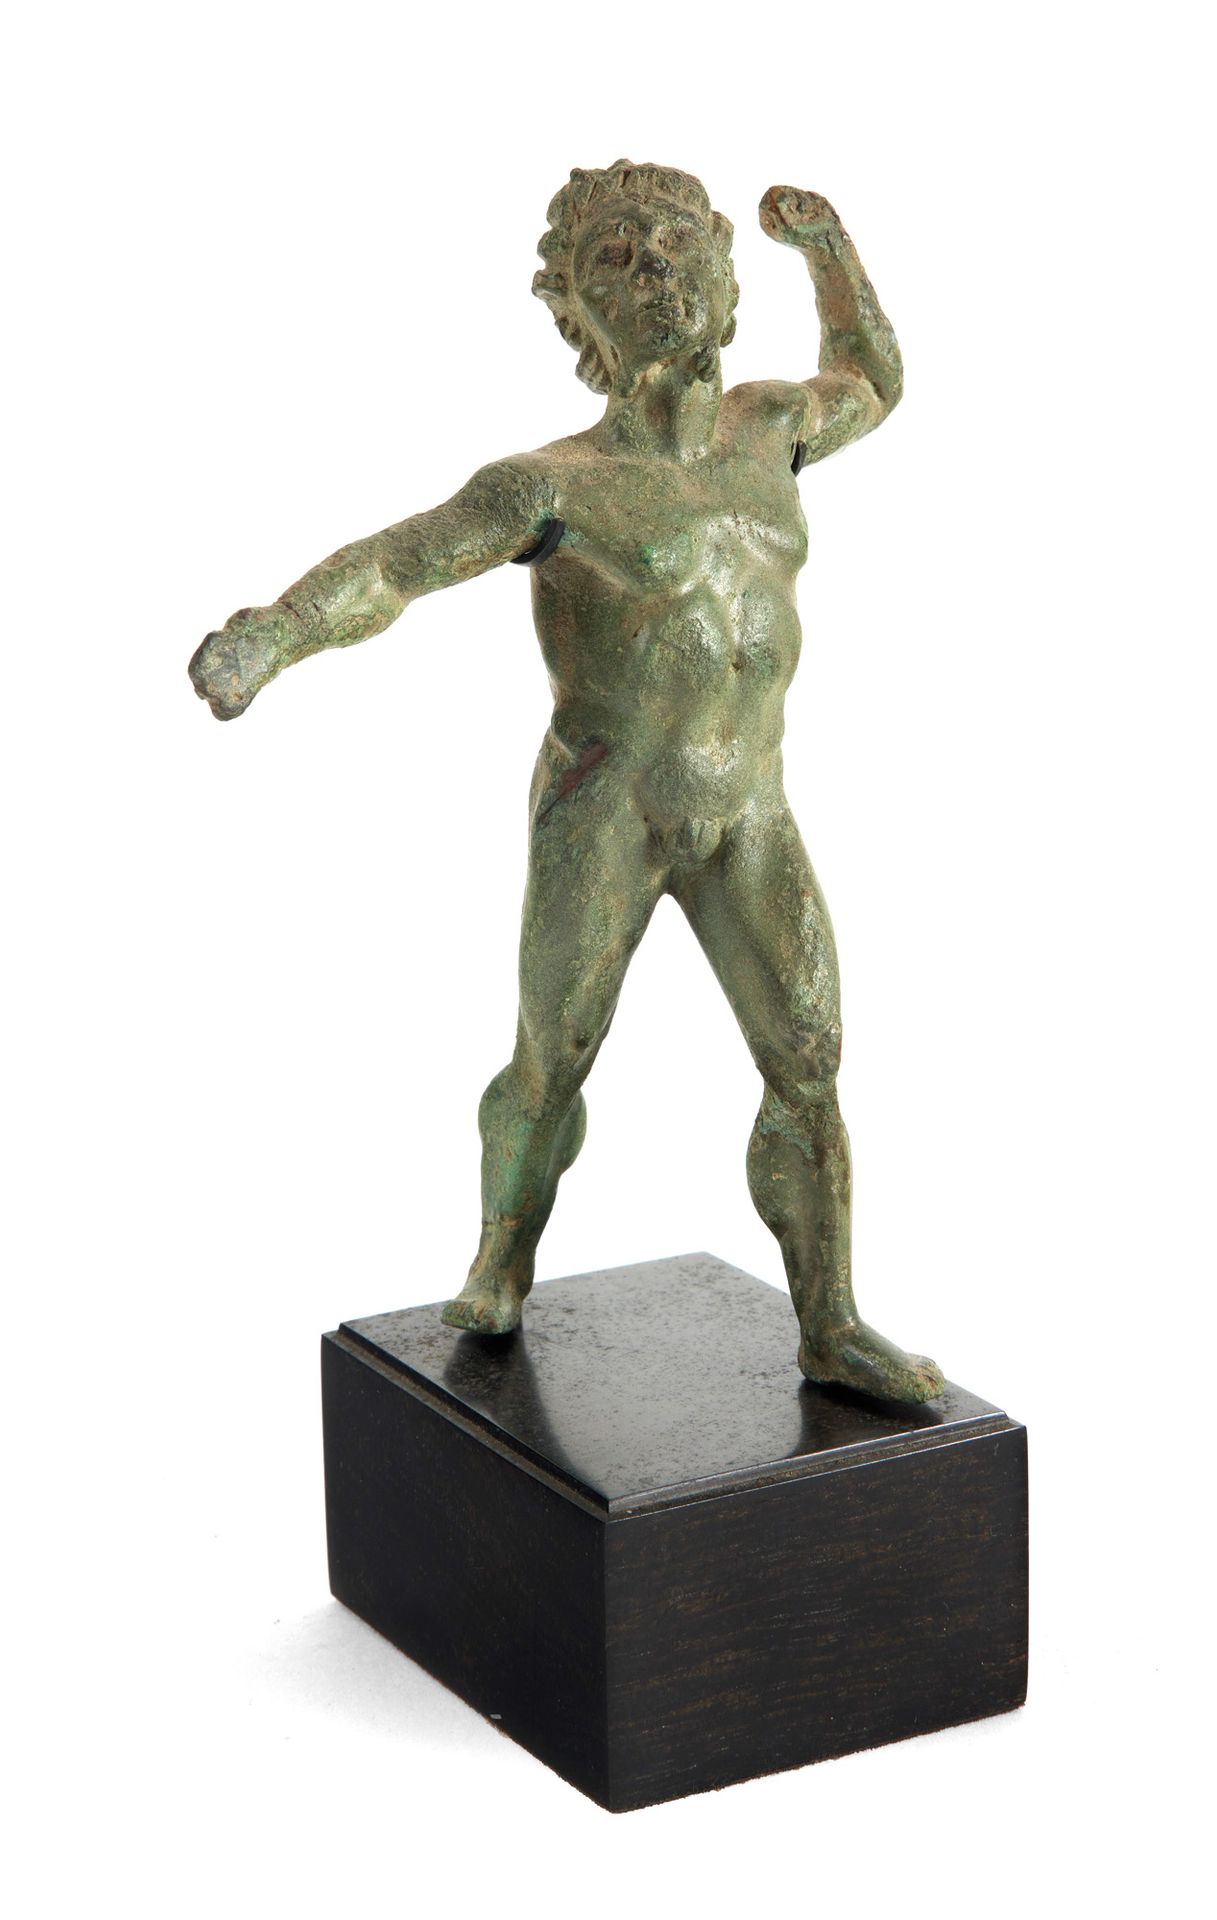 Statuette de faune 一个跳舞的雕像

舞蹈。他赤身裸体，肌肉线条逼真。头发由直股组成，似乎要飞走。

青铜，带有光滑的绿色铜锈。左臂受到轻微冲&hellip;